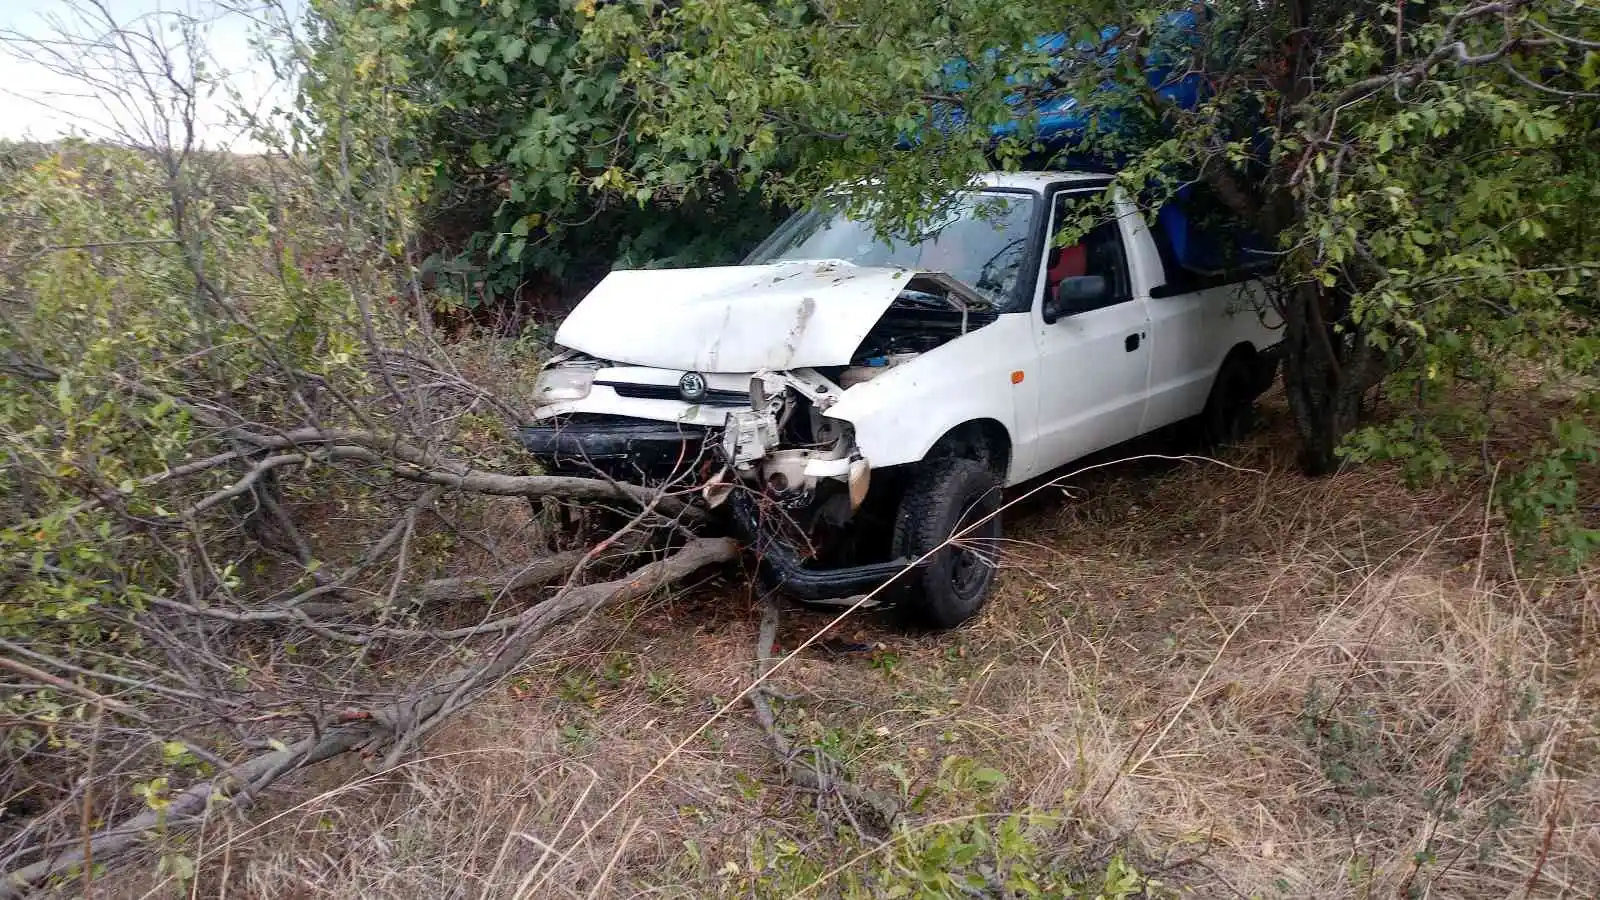 Virajı alamayan araç ağaçlık alana uçtu, sürücü kayıplara karıştı
